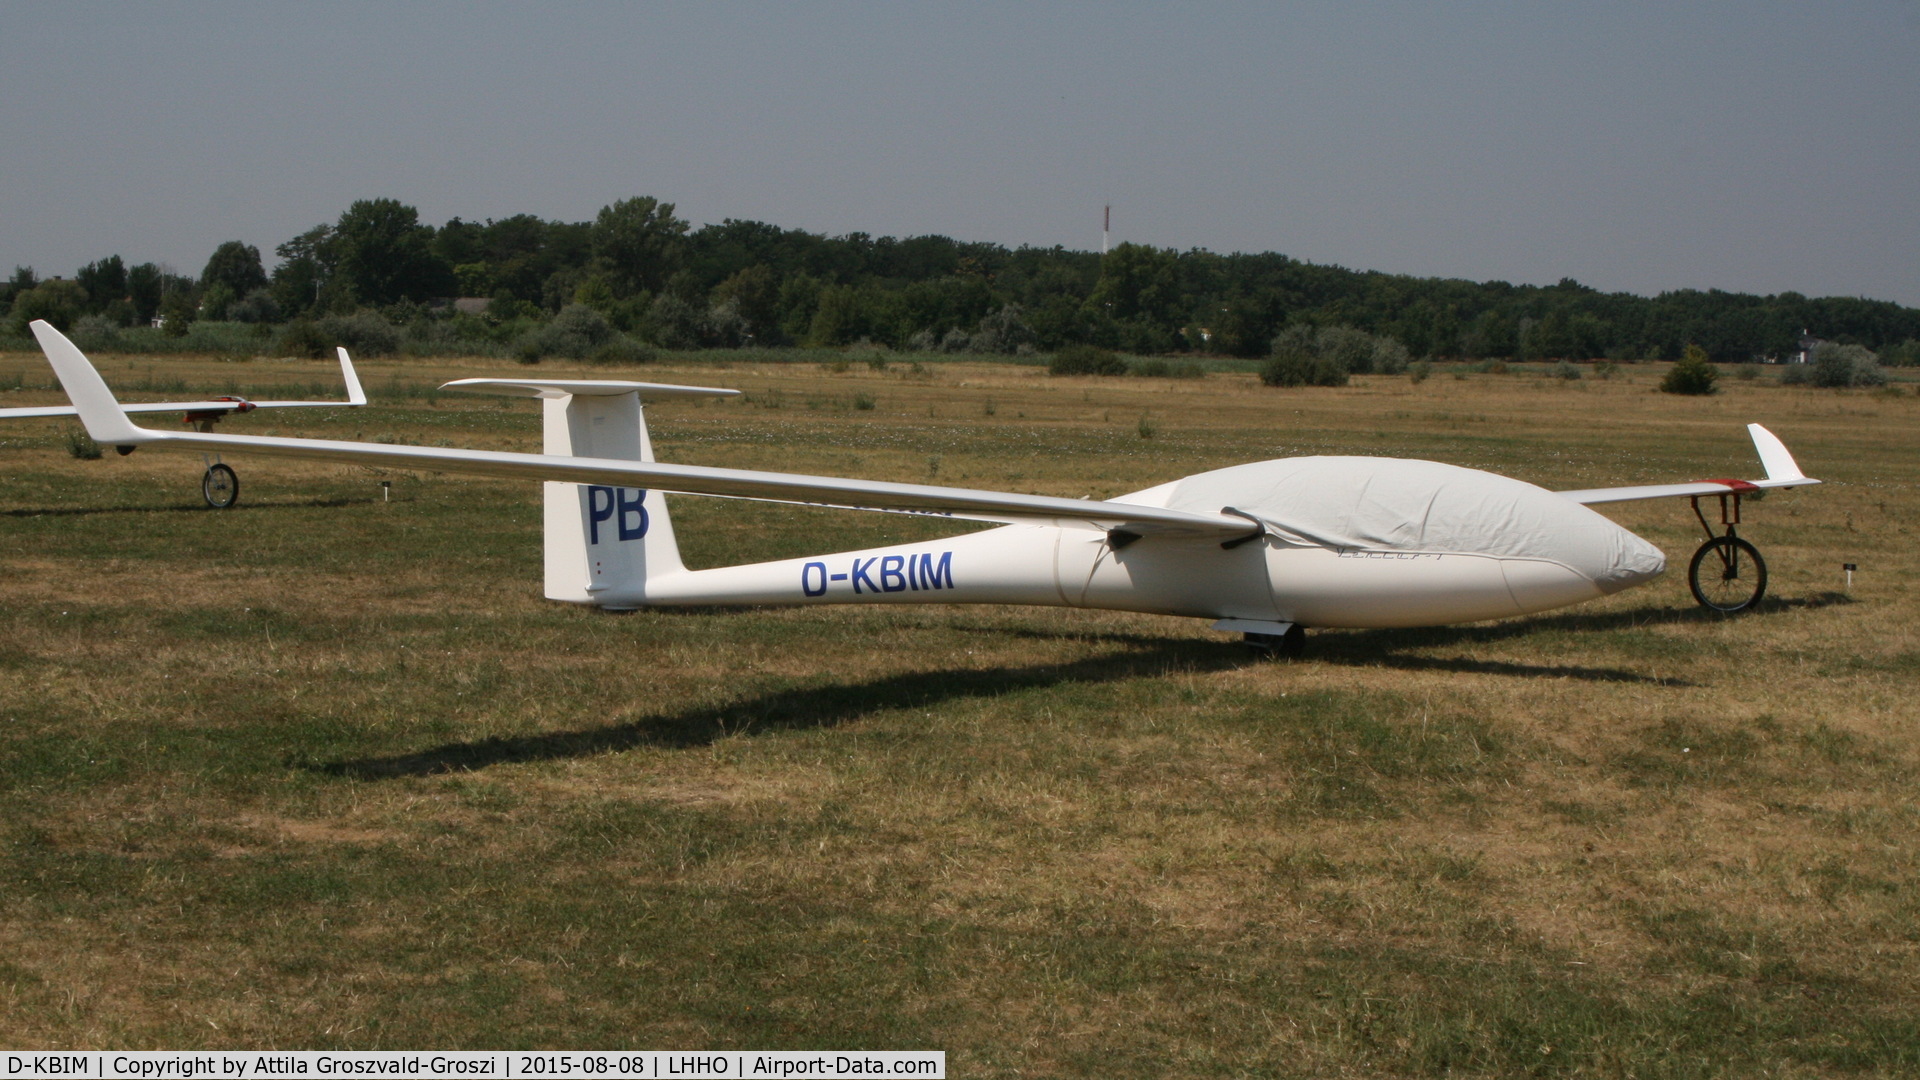 D-KBIM, 1983 Schempp-Hirth Ventus bT C/N 6/126, Hajdúszoboszló Airport, Hungary - 60. Hungary Gliding National Championship and third Civis Thermal Cup, 2015